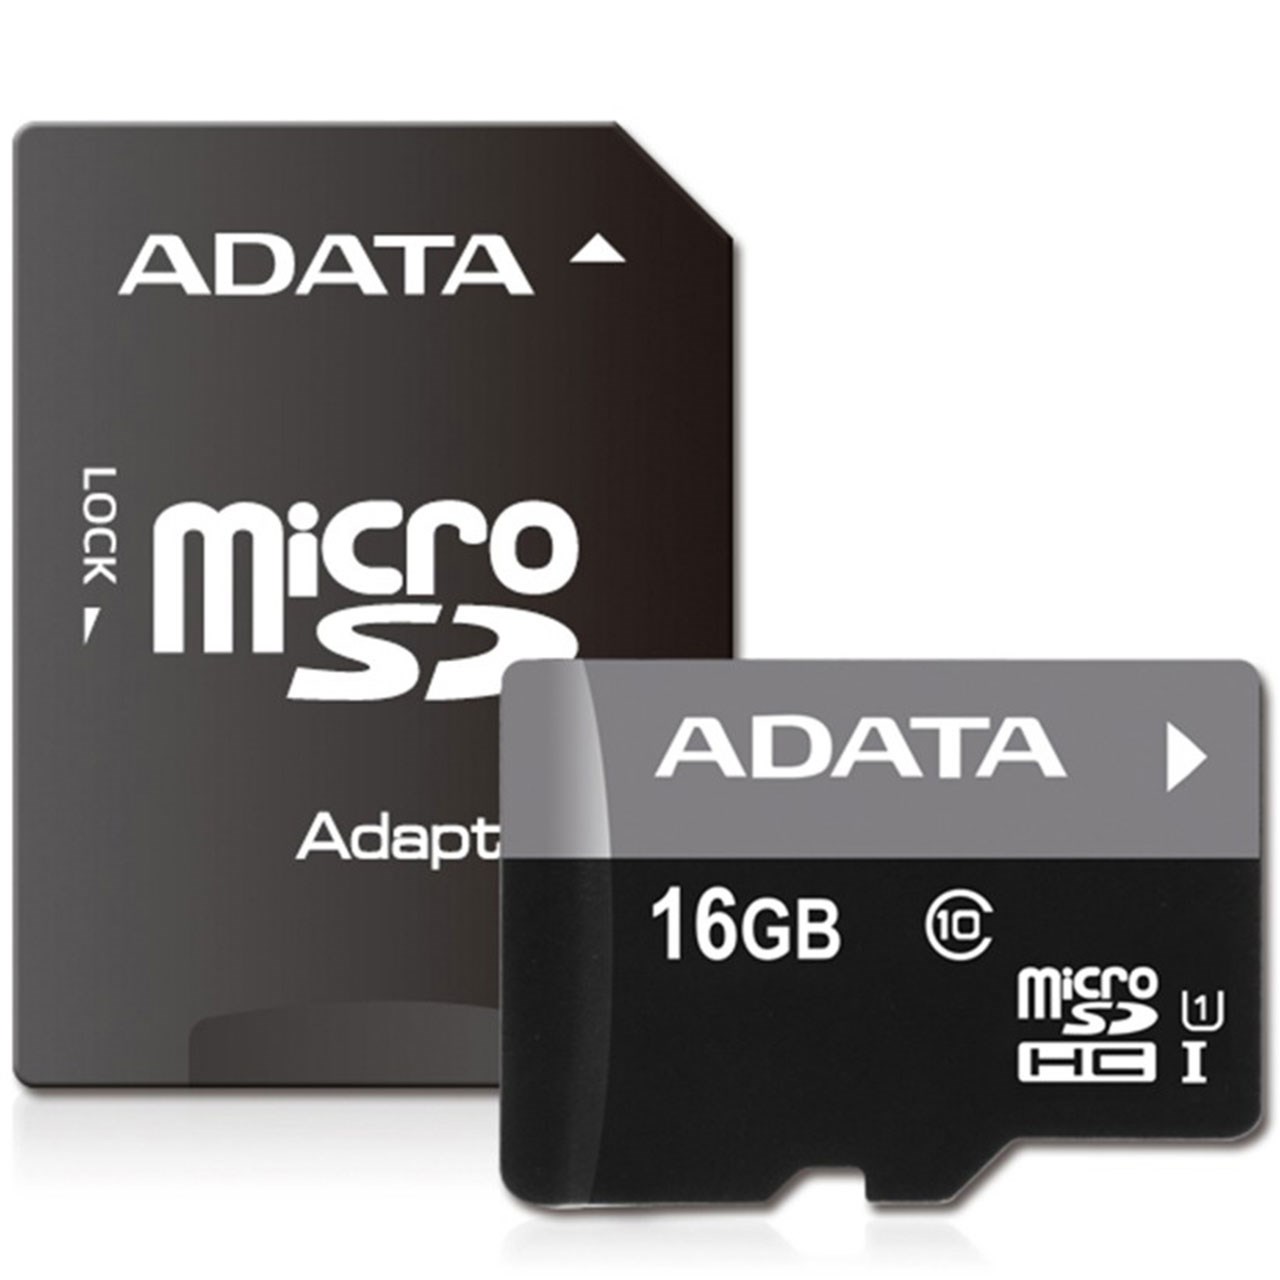 کارت حافظه microSDHC ای دیتا مدل Premier کلاس 10 استاندارد UHS-I U1 سرعت 50MBps همراه با آداپتور SD ظرفیت 16 گیگابایت